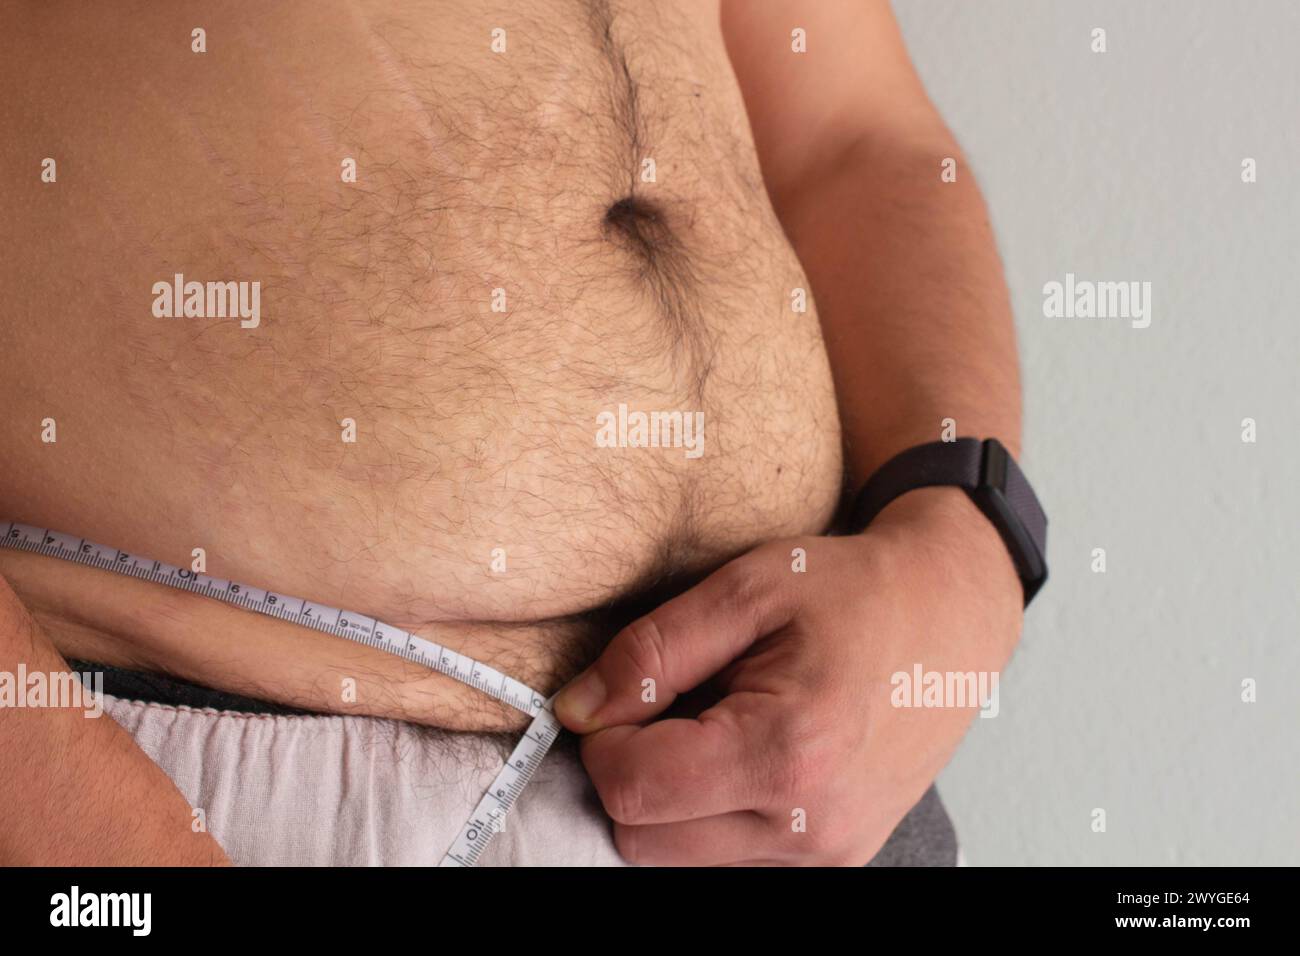 Erleben Sie die Reise eines übergewichtigen Mannes, der sich um seine Gesundheit kümmert und seine Taille mit Entschlossenheit zwischen sichtbaren Dehnungsstreifen misst Stockfoto